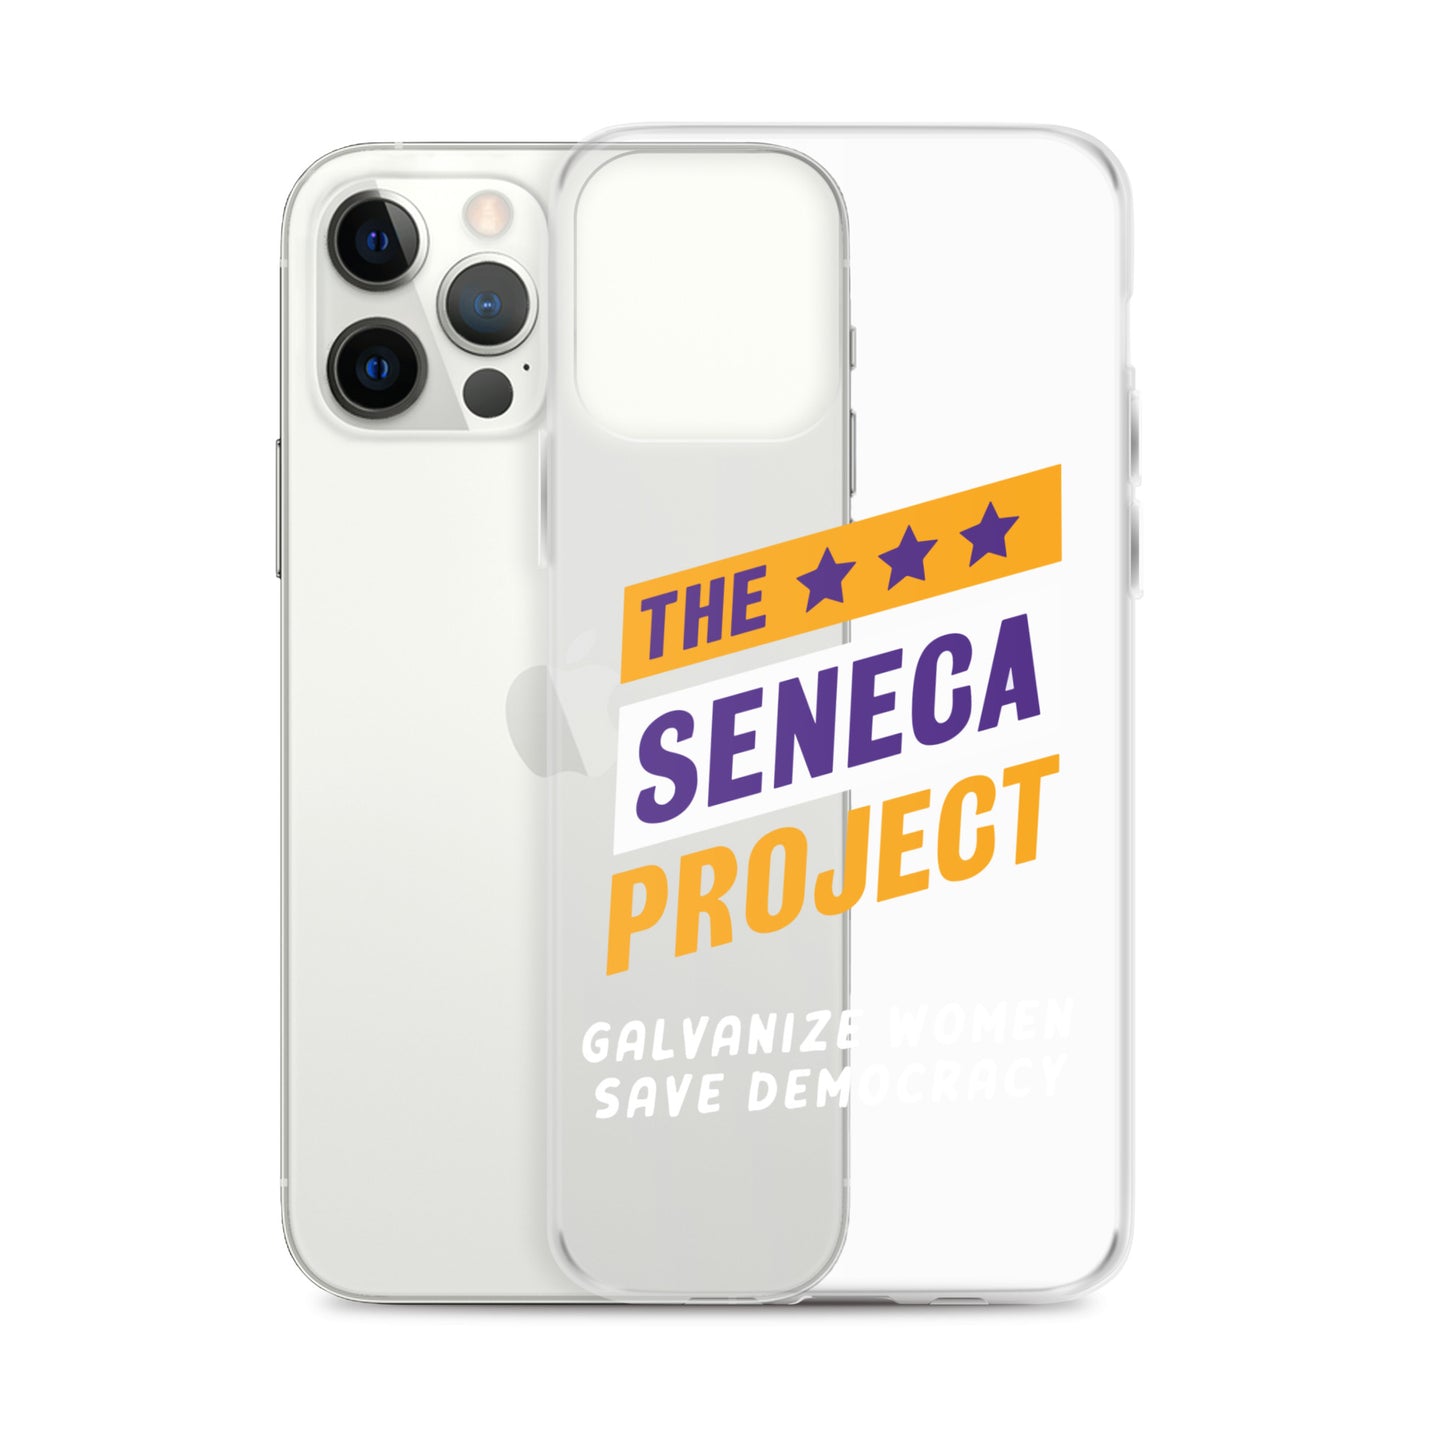 SENECA PROJECT LOGO CLEARE CASE iPHONE